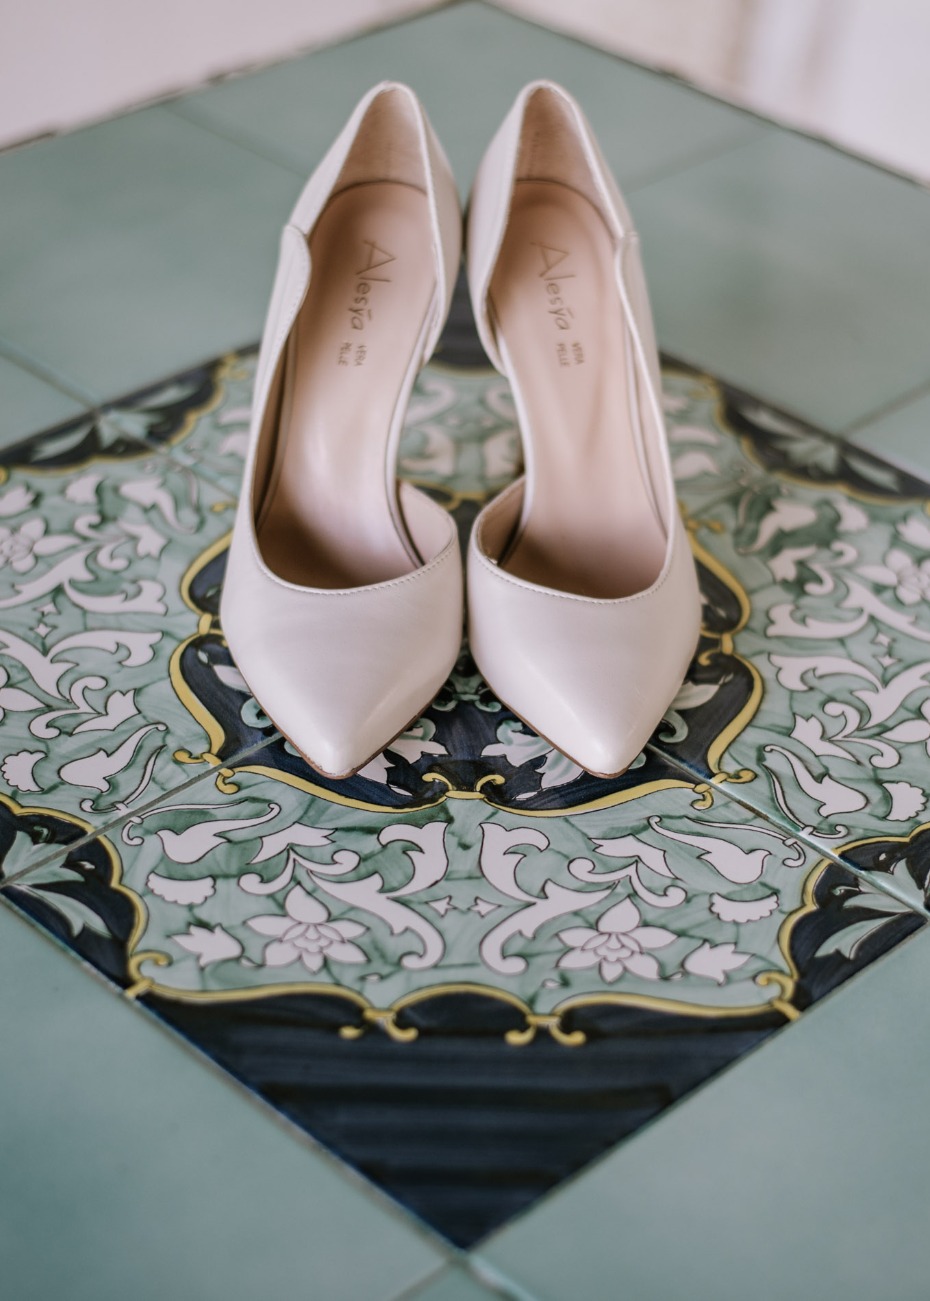 Italian wedding heels